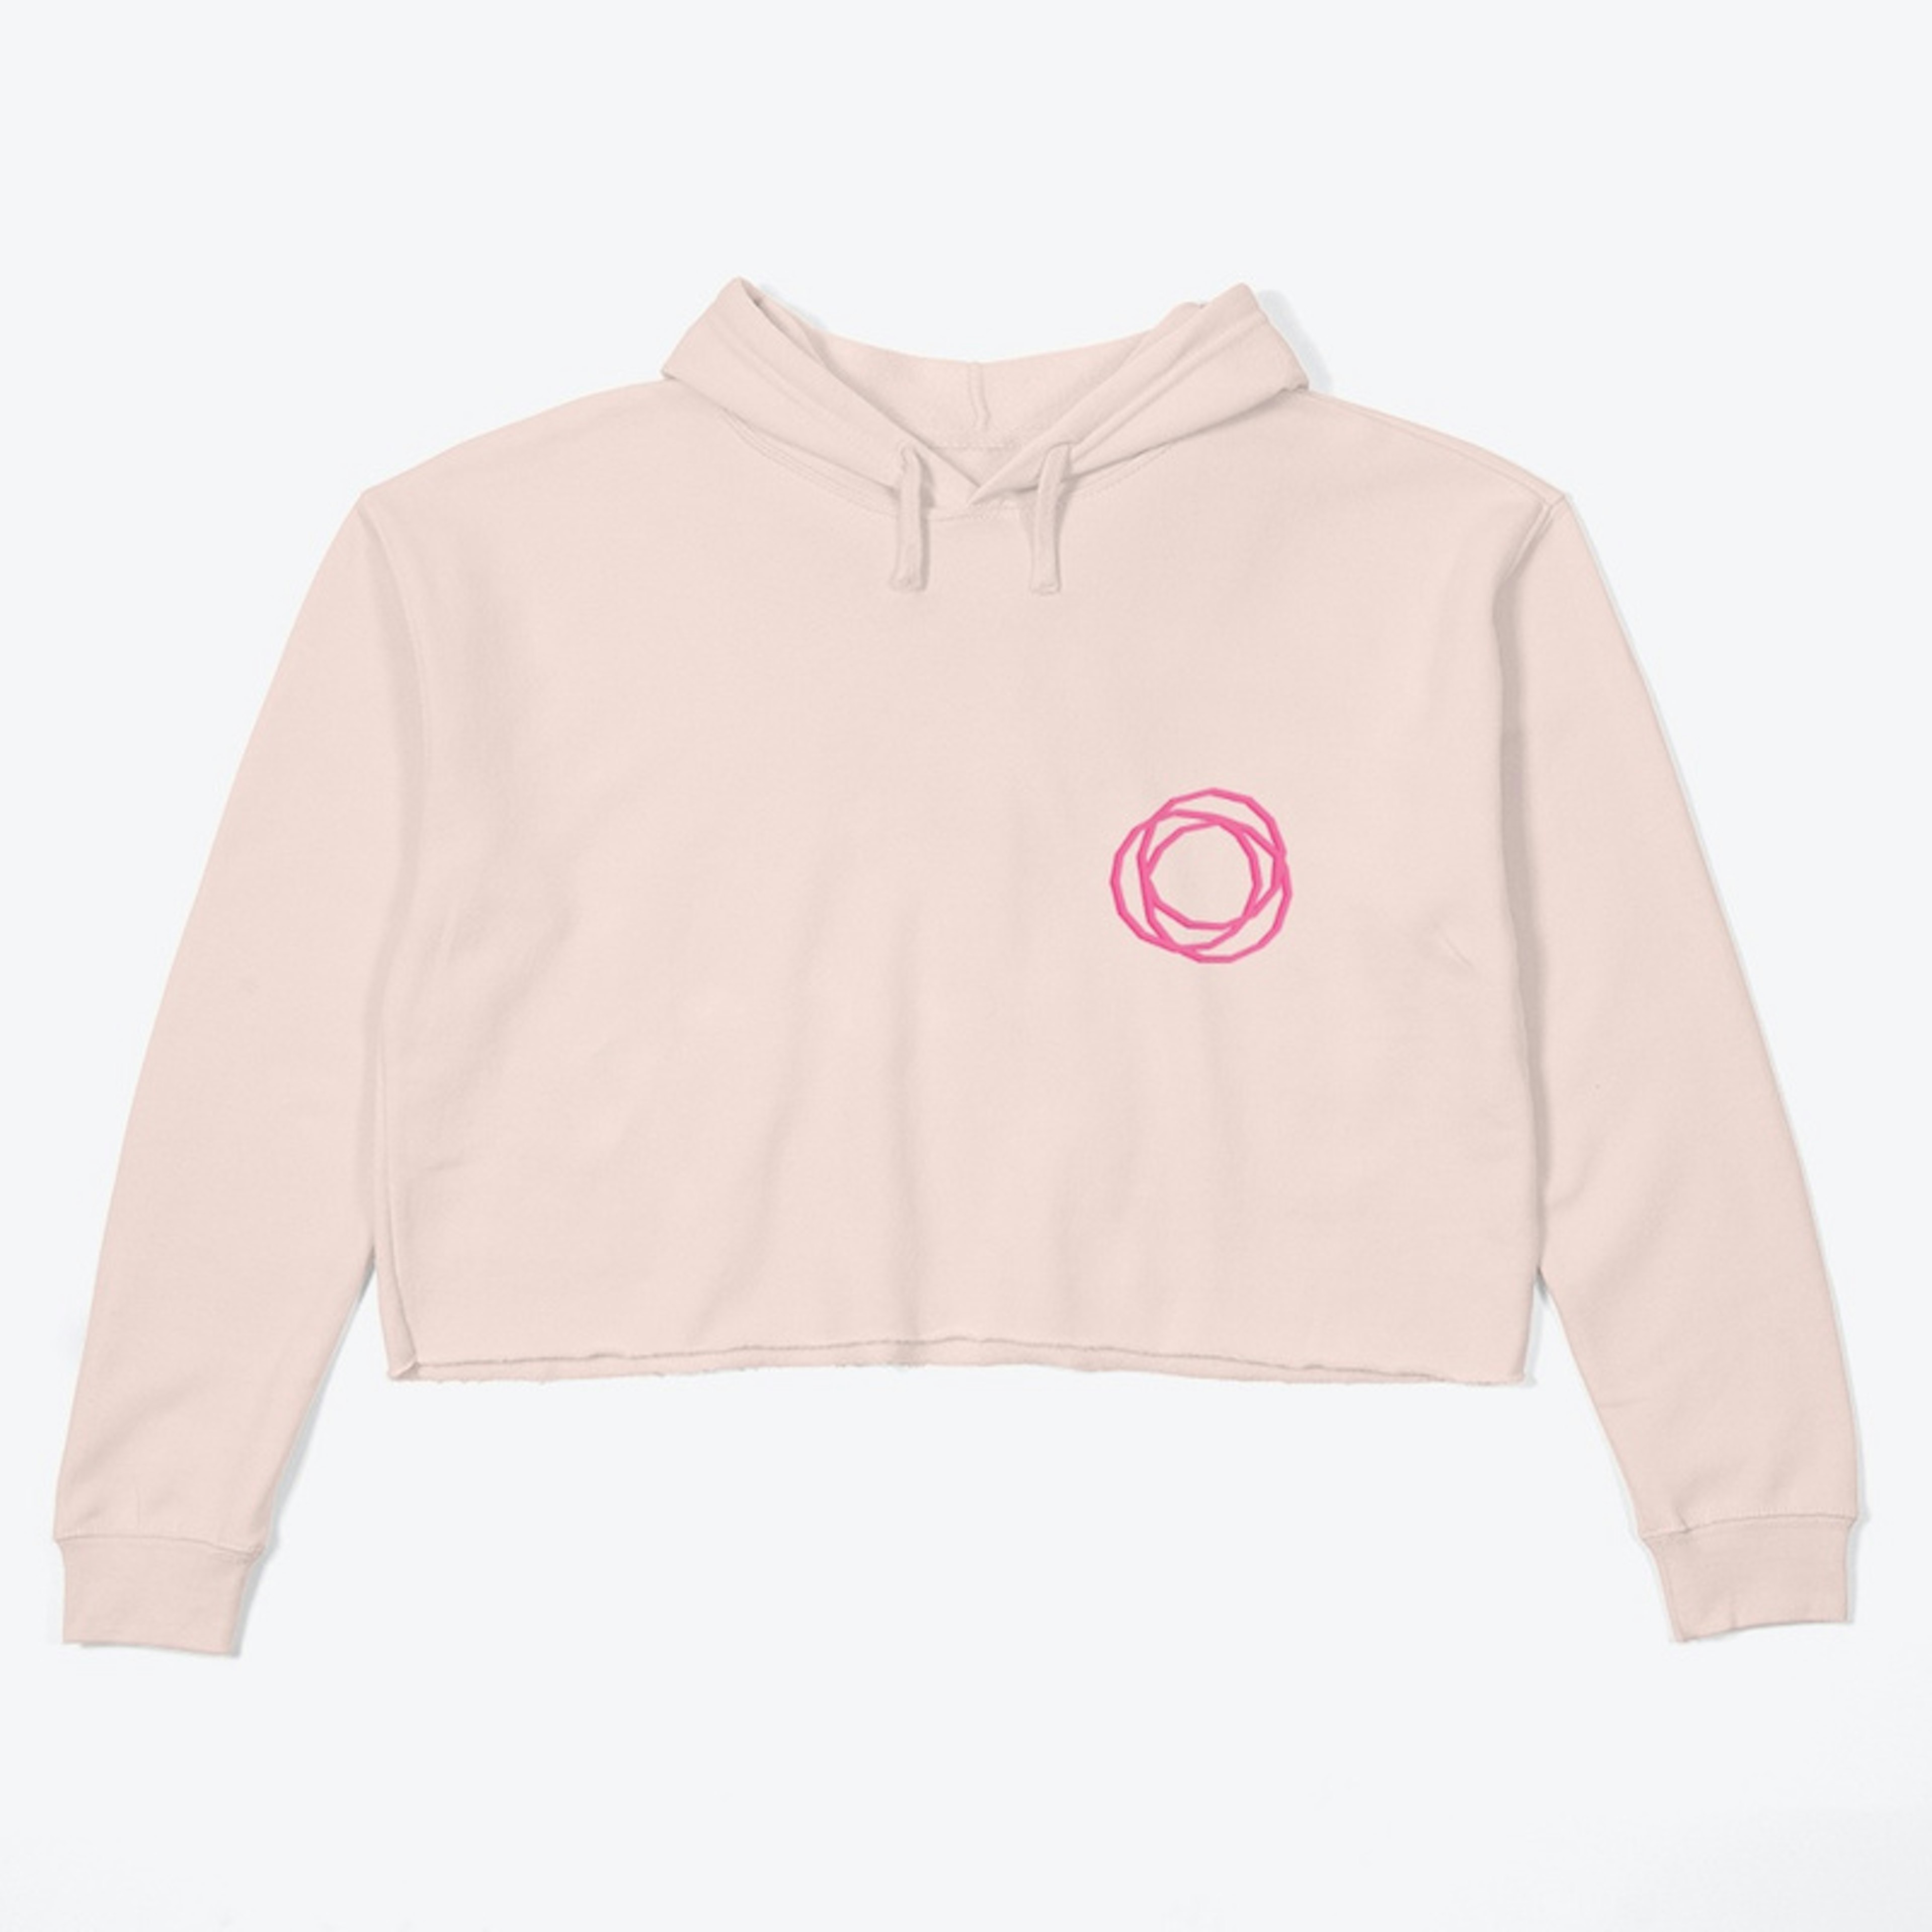 Pink crop hoodie